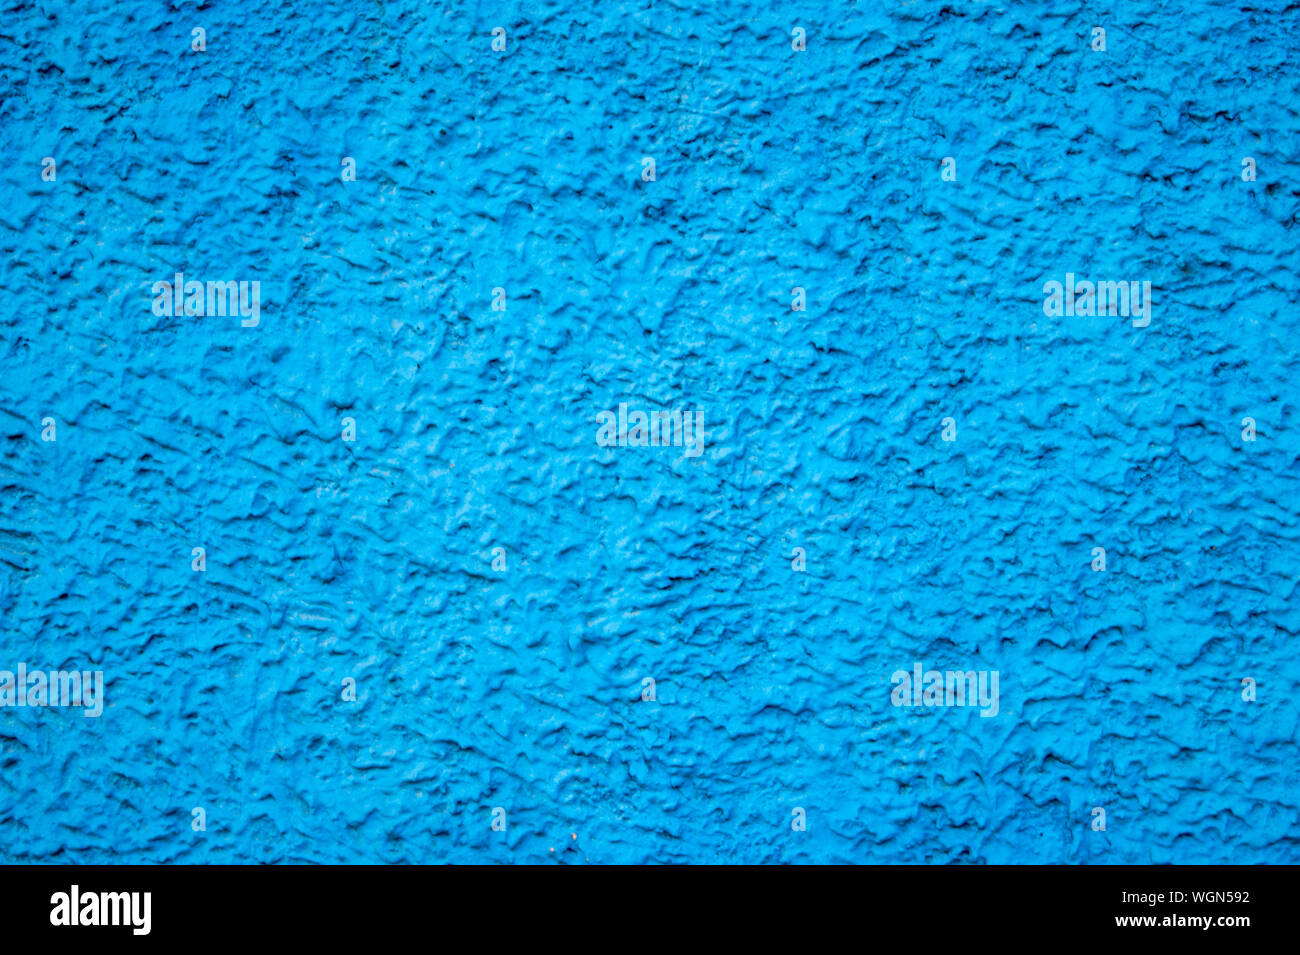 La texture du mur de béton avec du plâtre décoratif - photo. La couleur est bleu. La granularité, la rugosité. Façade. L'arrière-plan. Banque D'Images